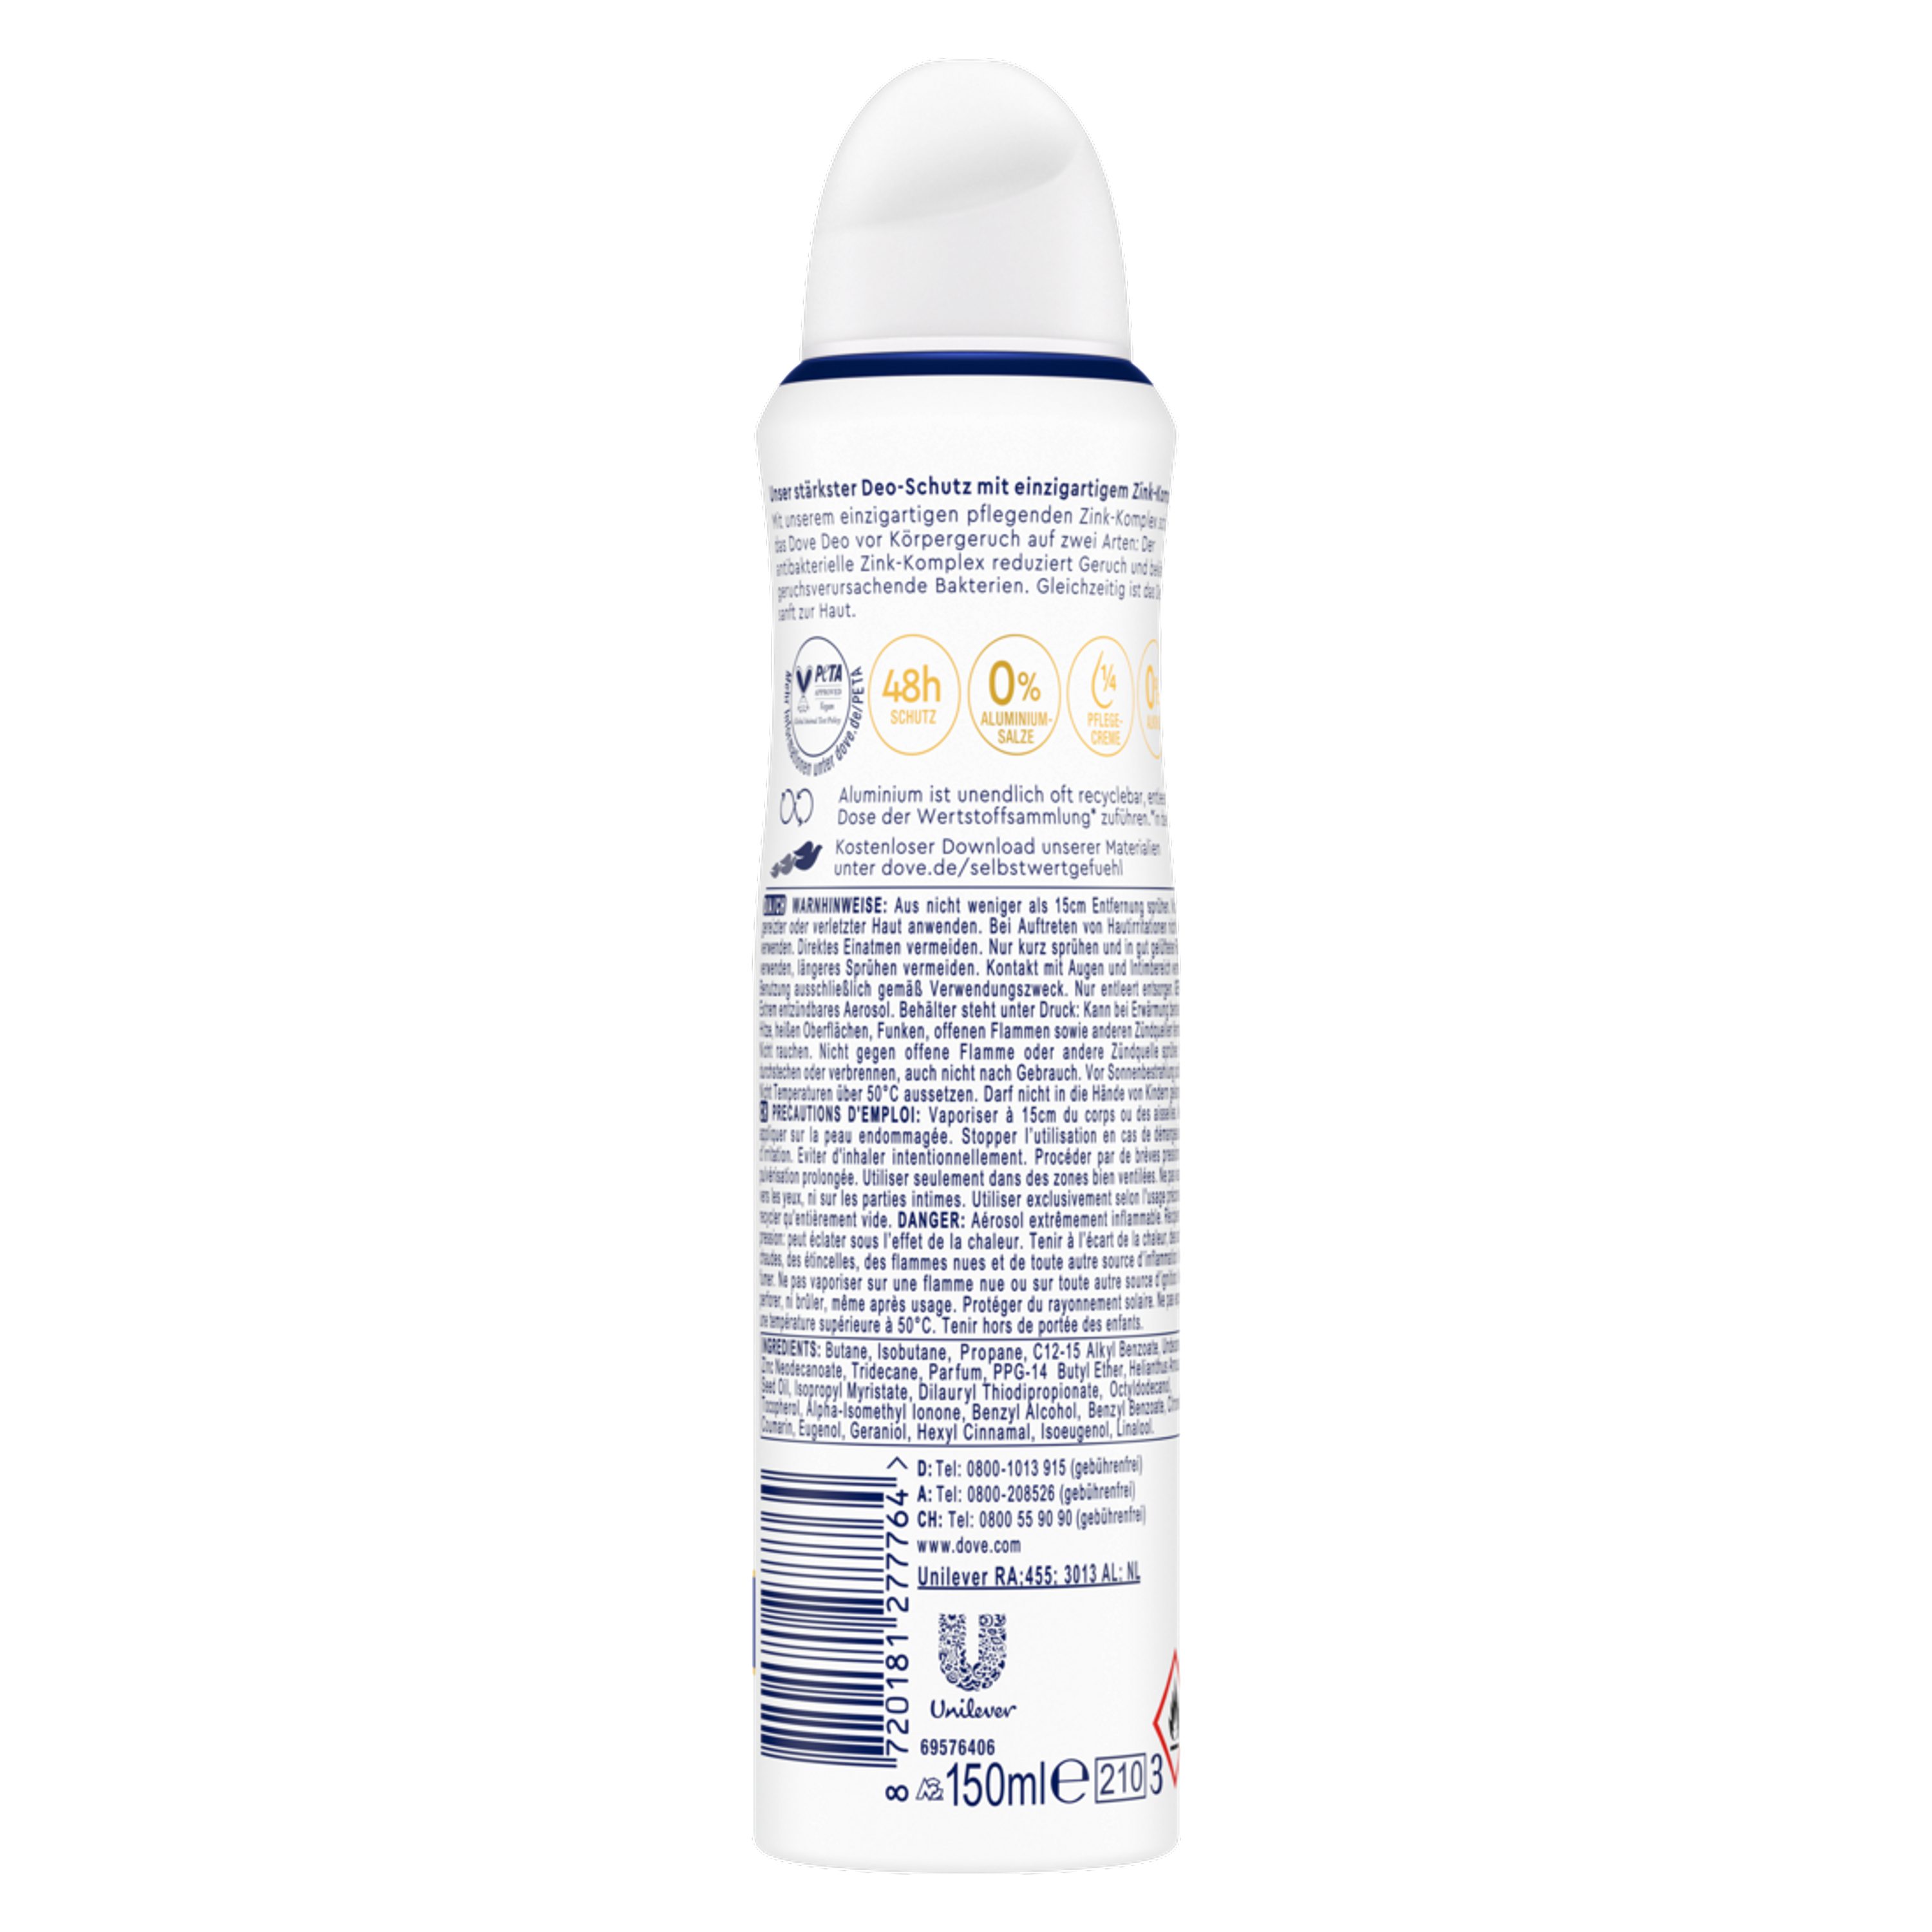 150ml pflegendem mit DOVE Original Deodorant-Spray Deo-Set Deo Zink-Komplex 6x